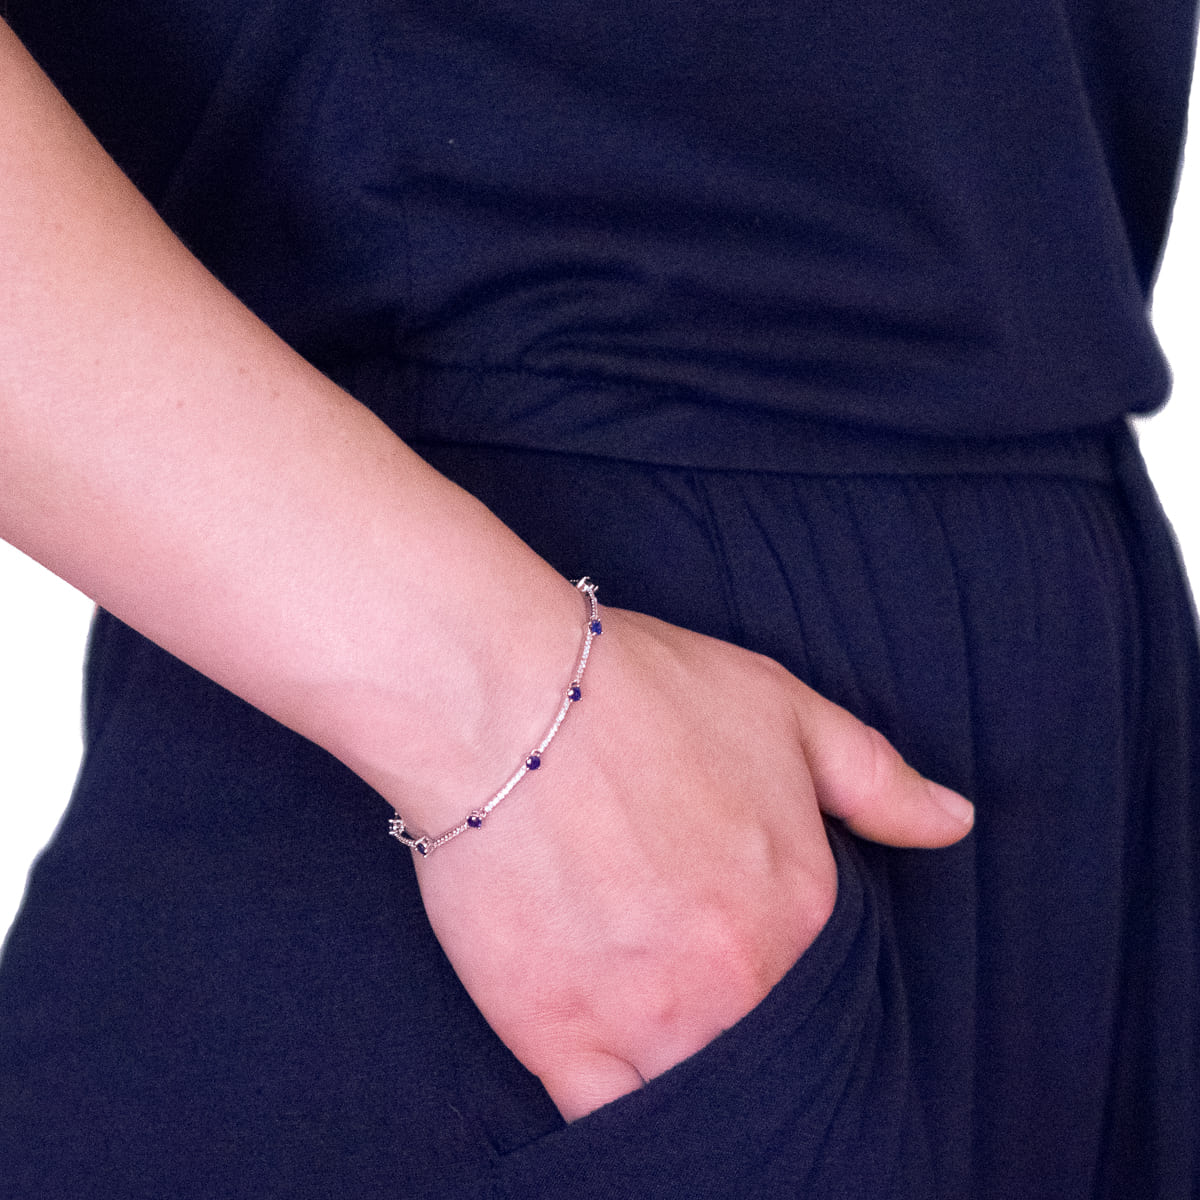 K.V. Fuchs Design Schmuck Damen Armband in silber mit Zirkonia in saphirblau, weiß »A-22-21«